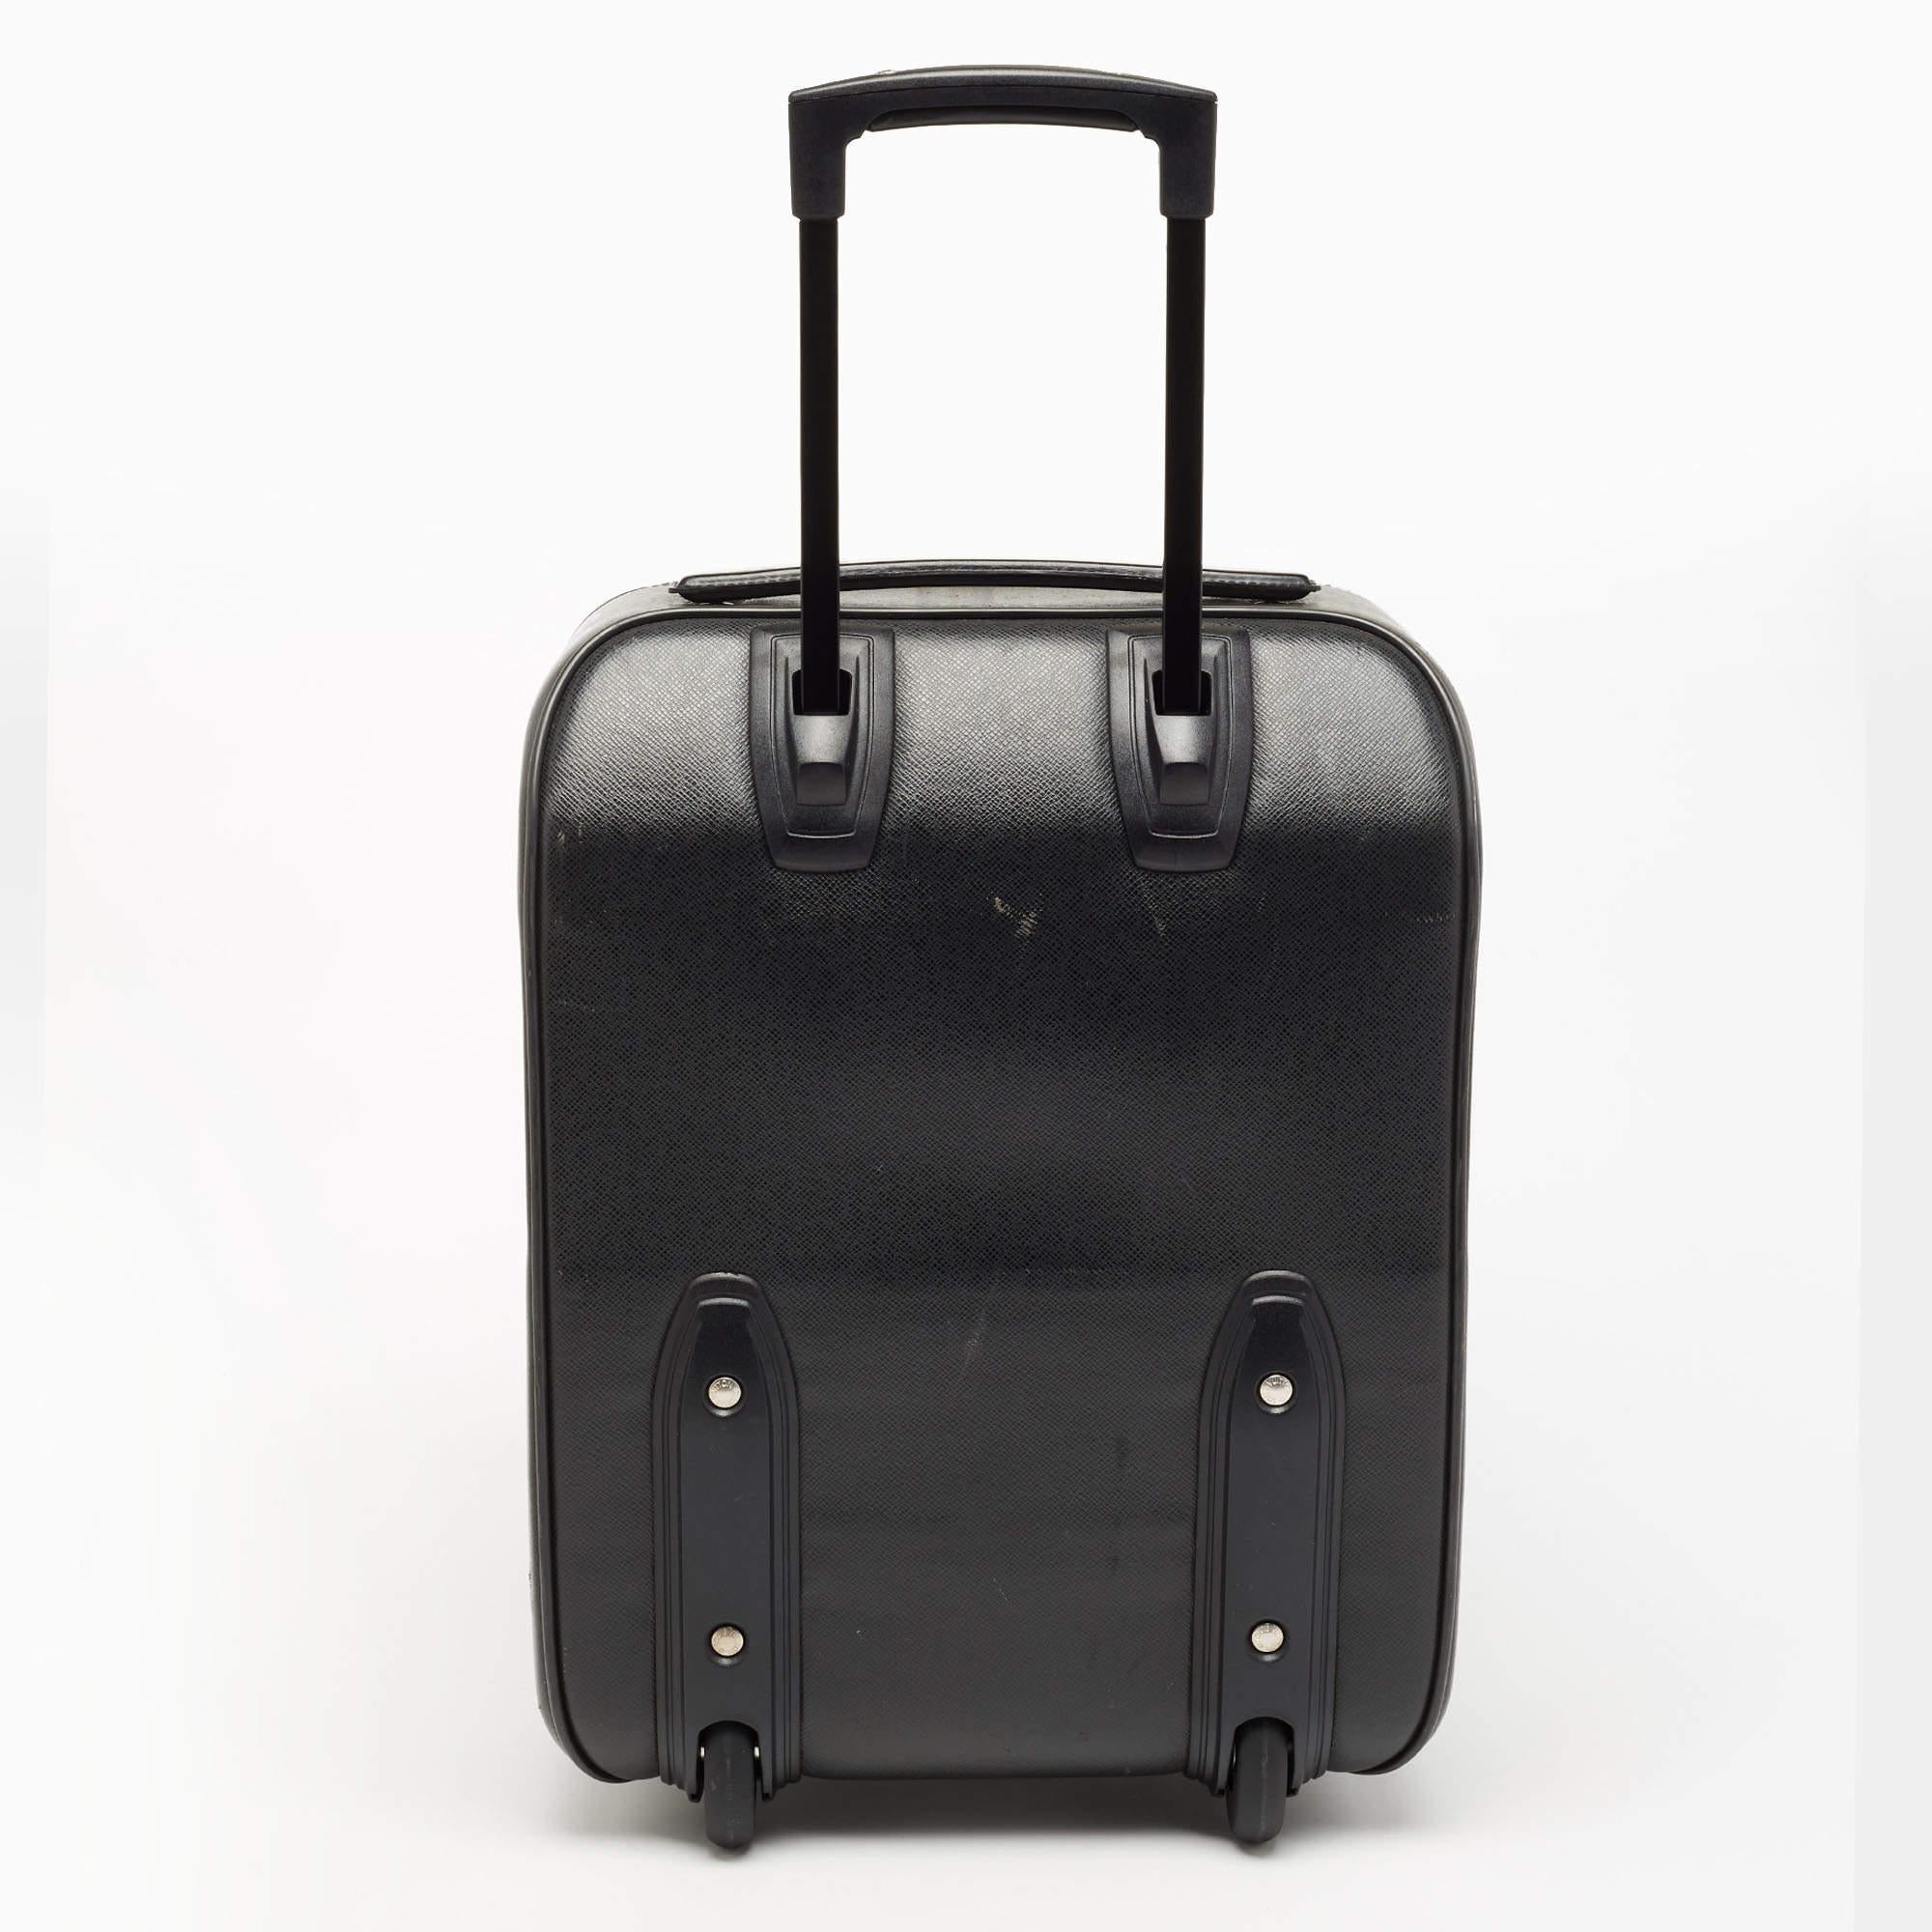 Ce bagage Pegase 45 Business de Louis Vuitton est très robuste, pratique et élégant pour les longues vacances. Confectionné en cuir Ardoise Taiga, ce sac à bagages présente des accessoires argentés, une poignée trolley et un intérieur soigné doublé